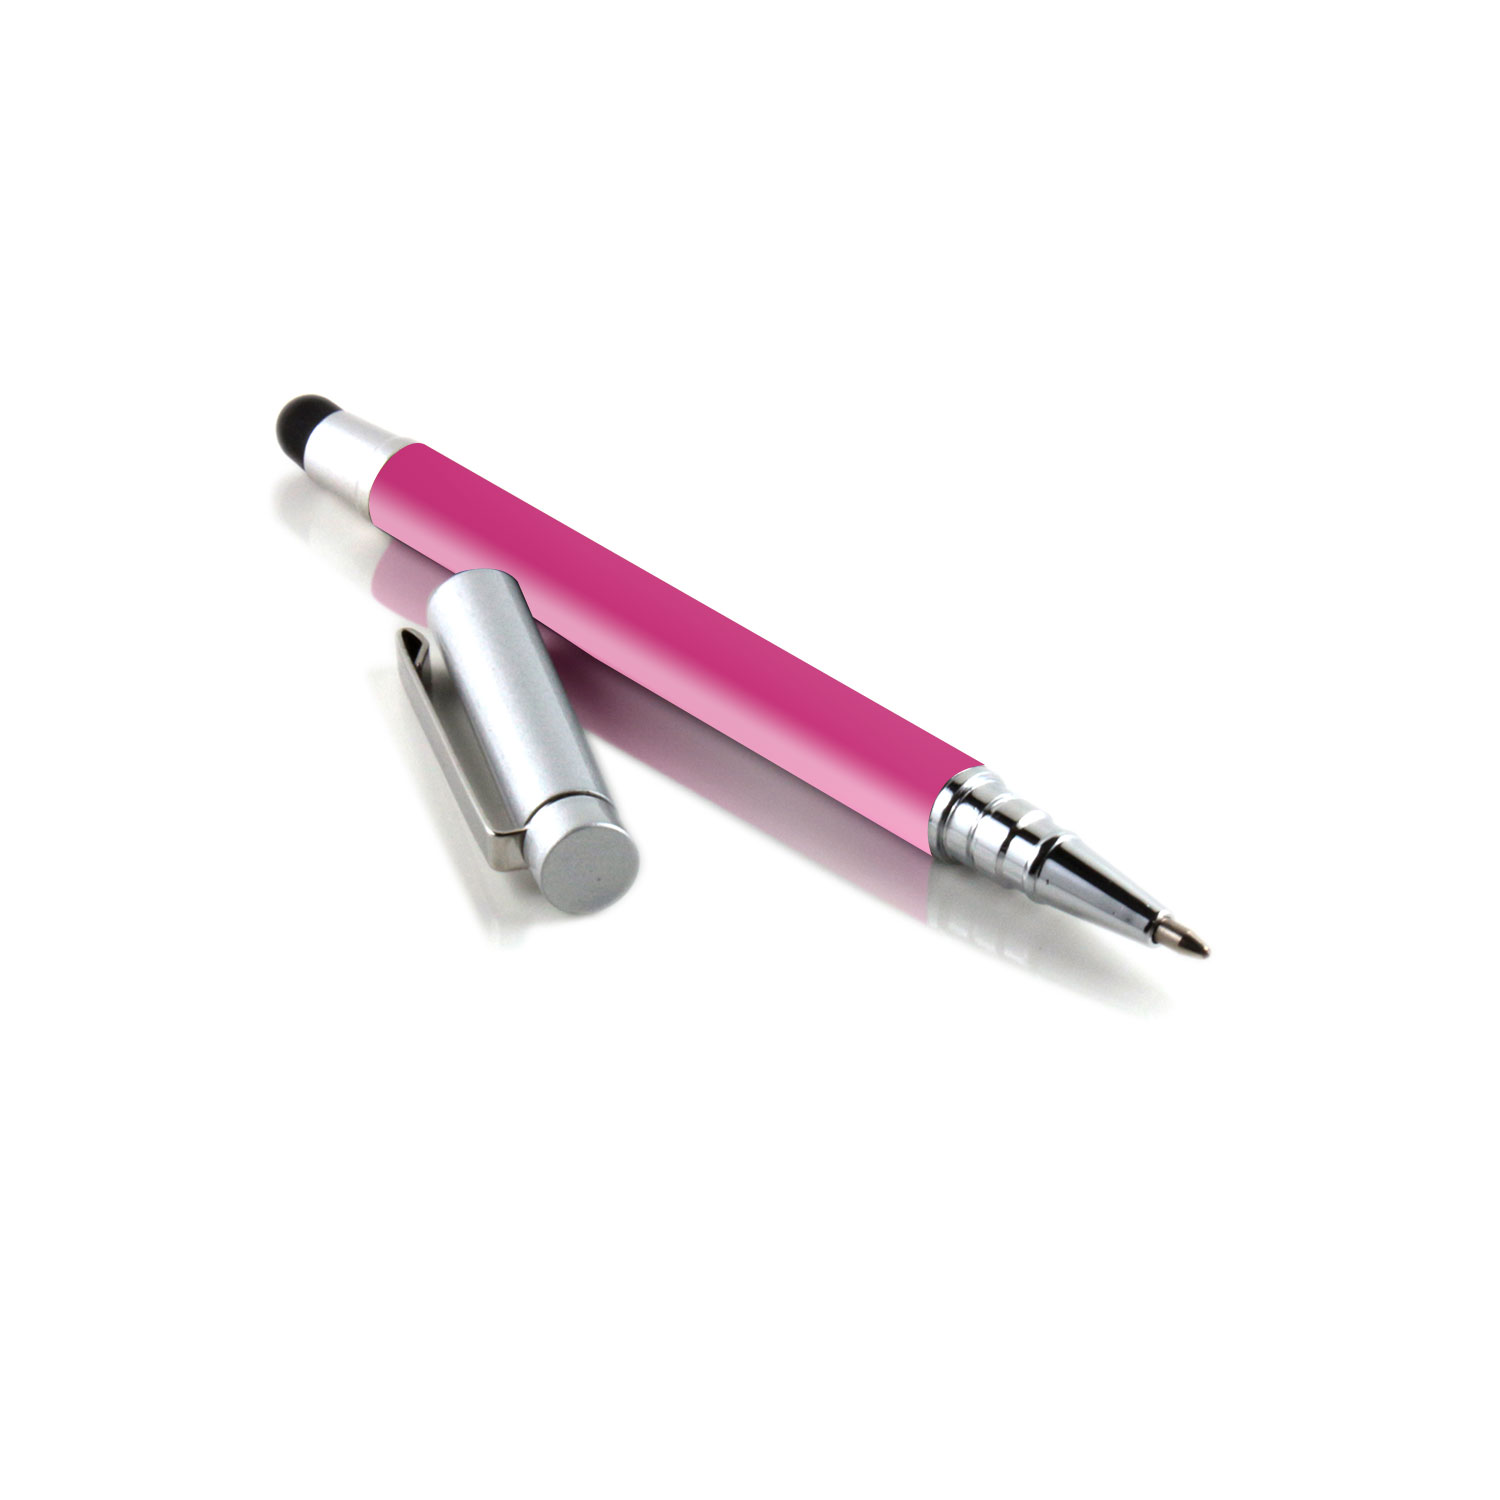 Pen | iPhone | Touchpen für Stylus | SILBER Stift Kugelschreiber SLABO und PINK Eingabestift ergonomischer etc. Touch iPad